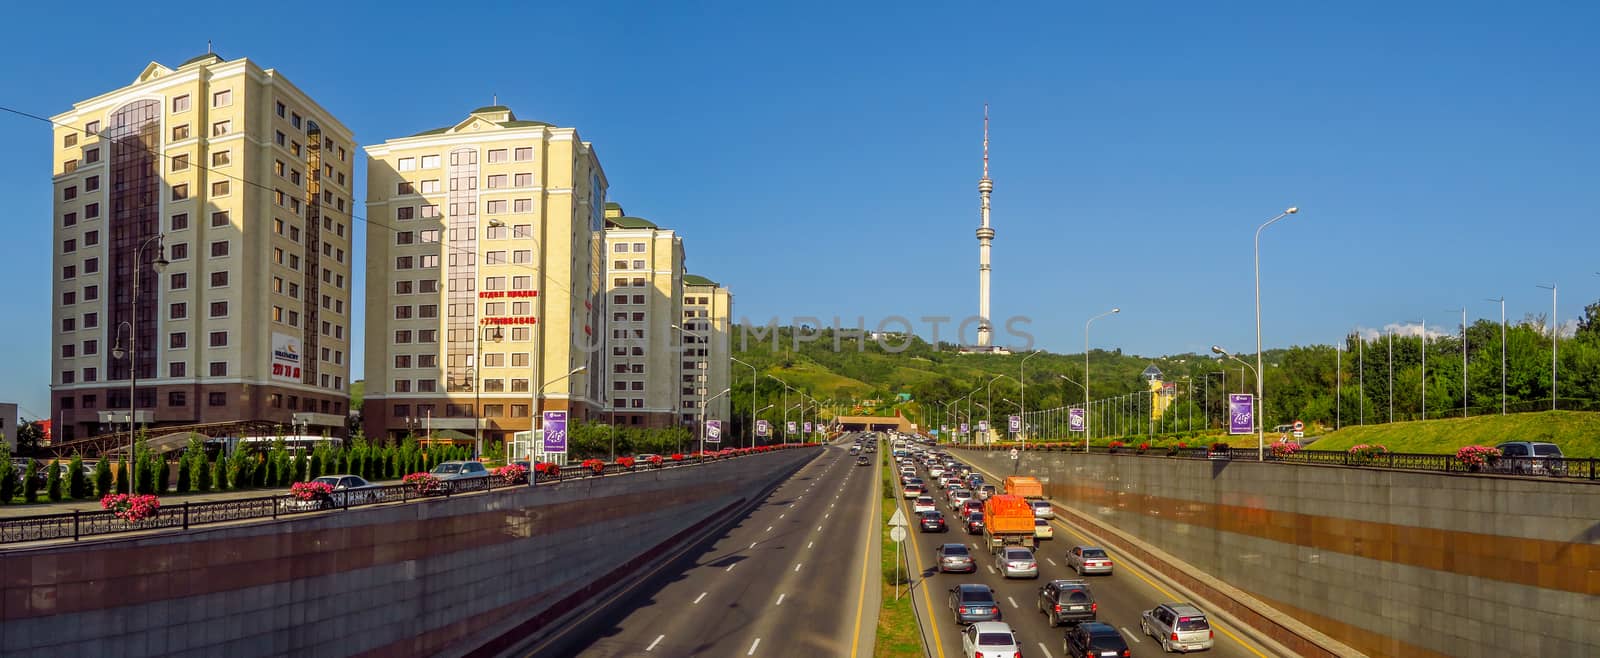 Almaty, Kazakhstan - July 21, 2017: View from Al-Farabi avenue, it is one of the main roads in the city of Almaty